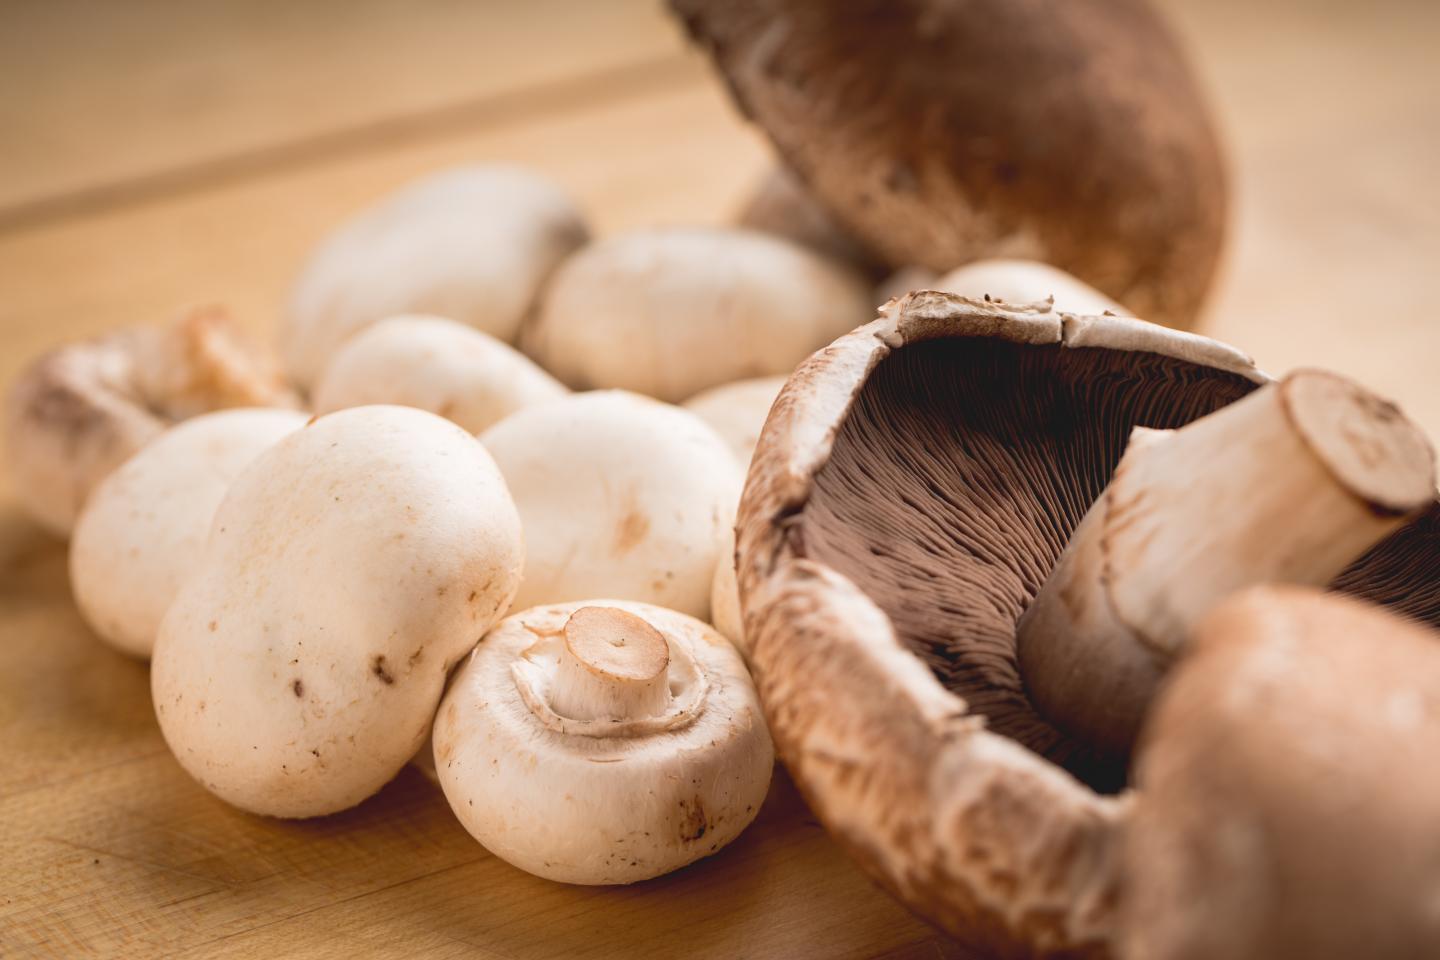 The main mushrooms